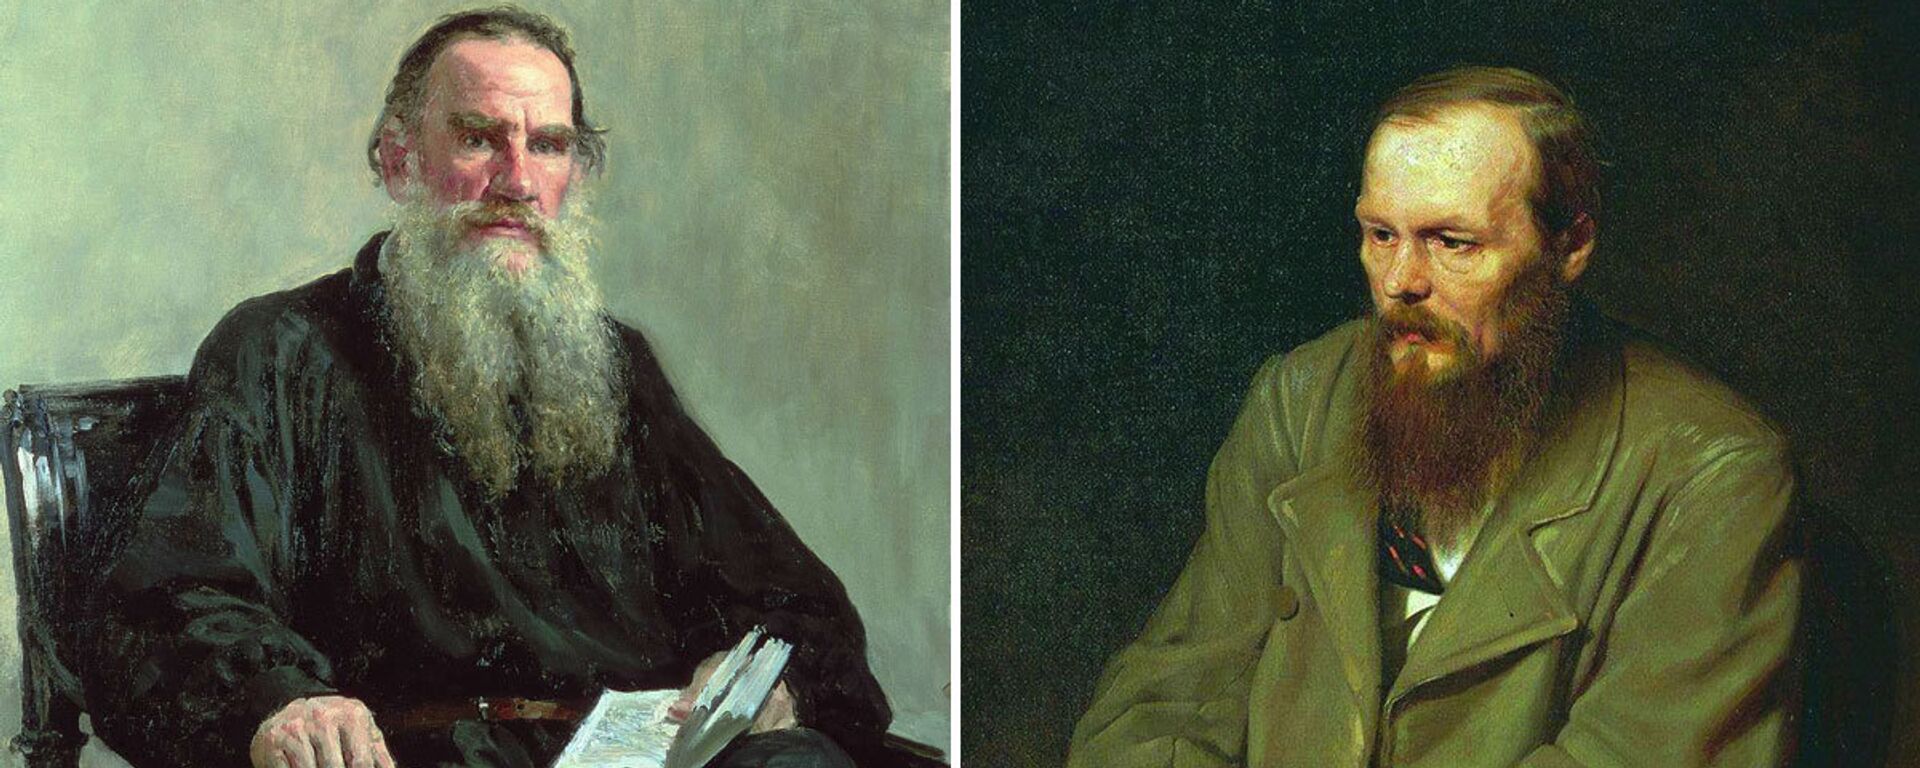 Tolstoy mu Dostoyevski mi? - Sputnik Türkiye, 1920, 13.07.2015